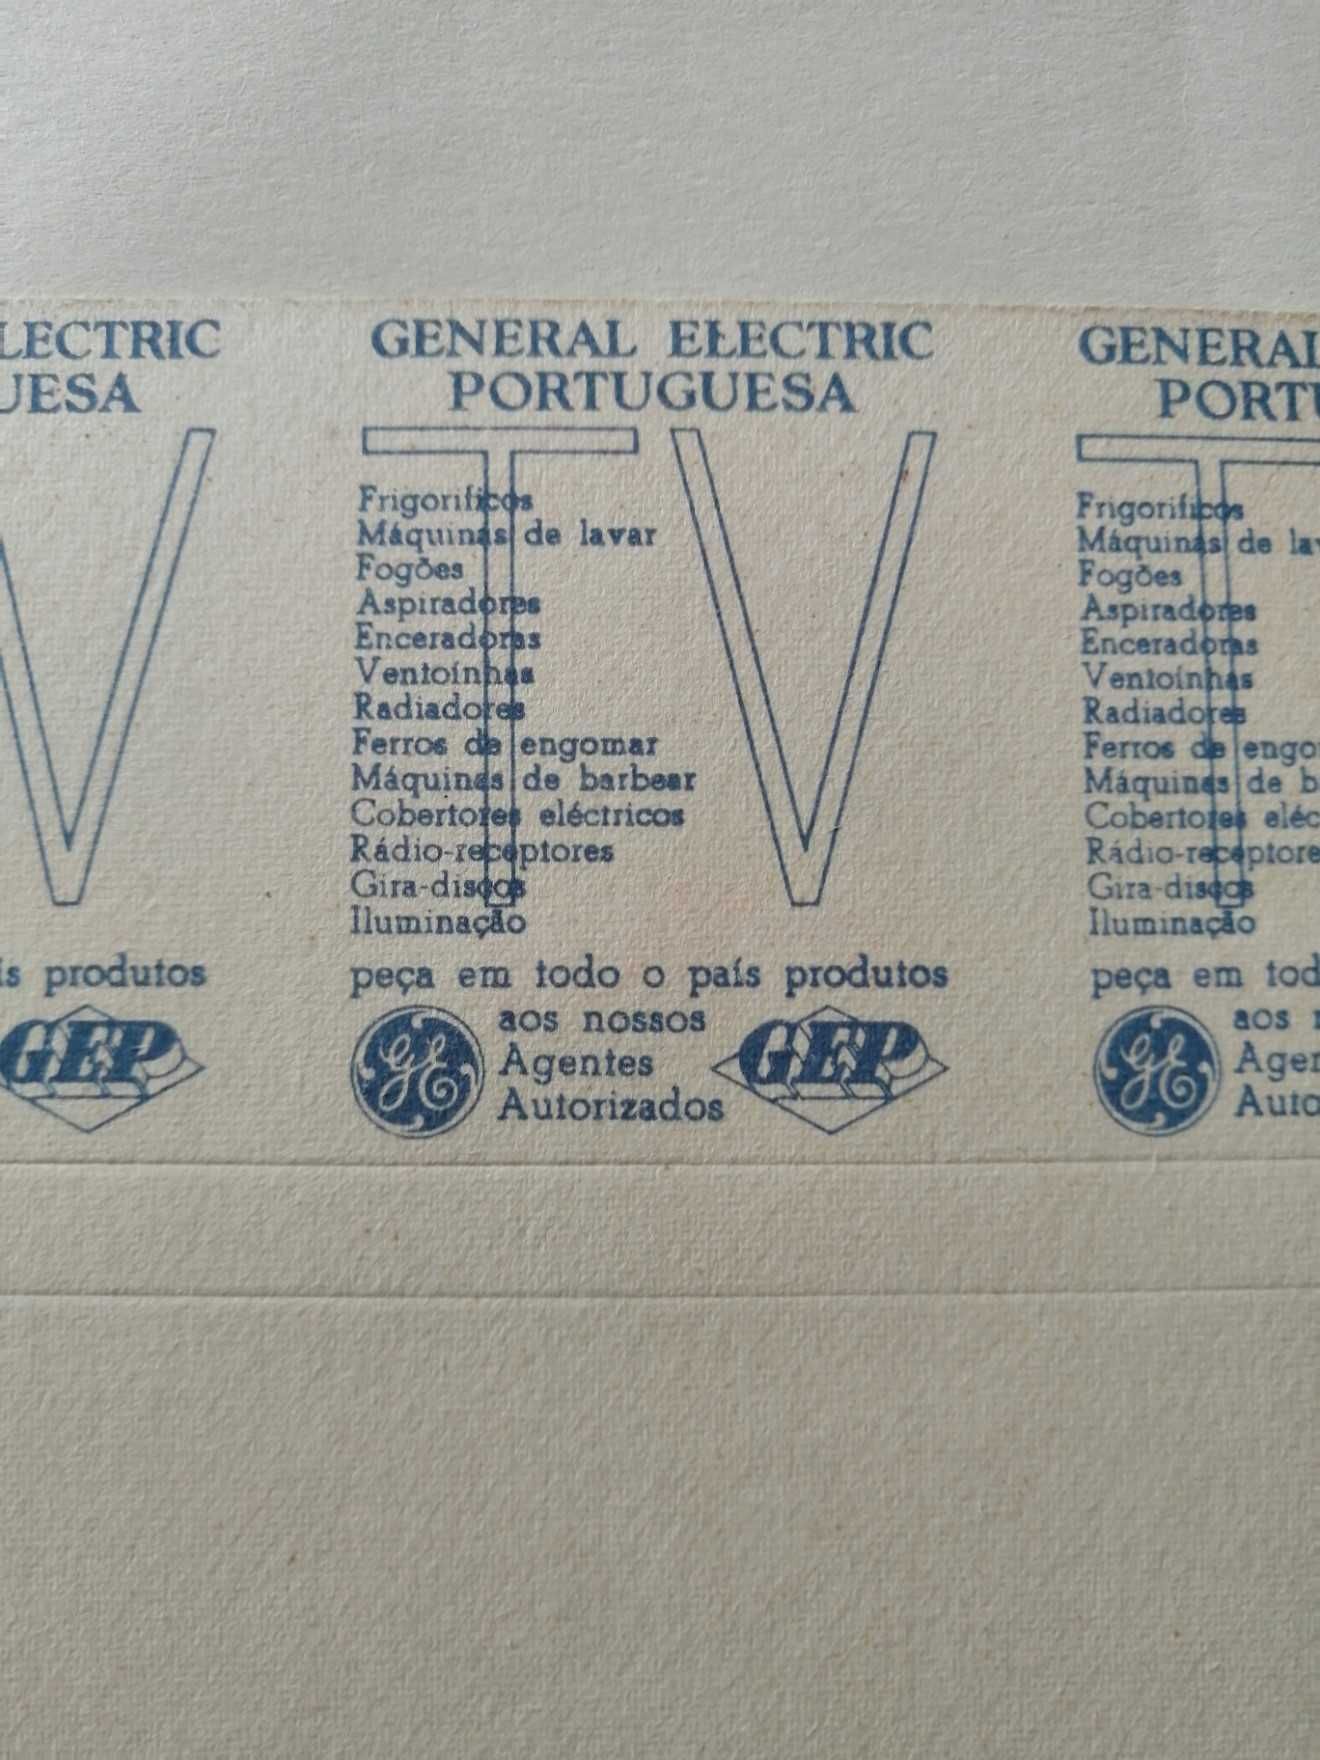 Carteiras de fósforos antigas por cortar publicidade General Electric